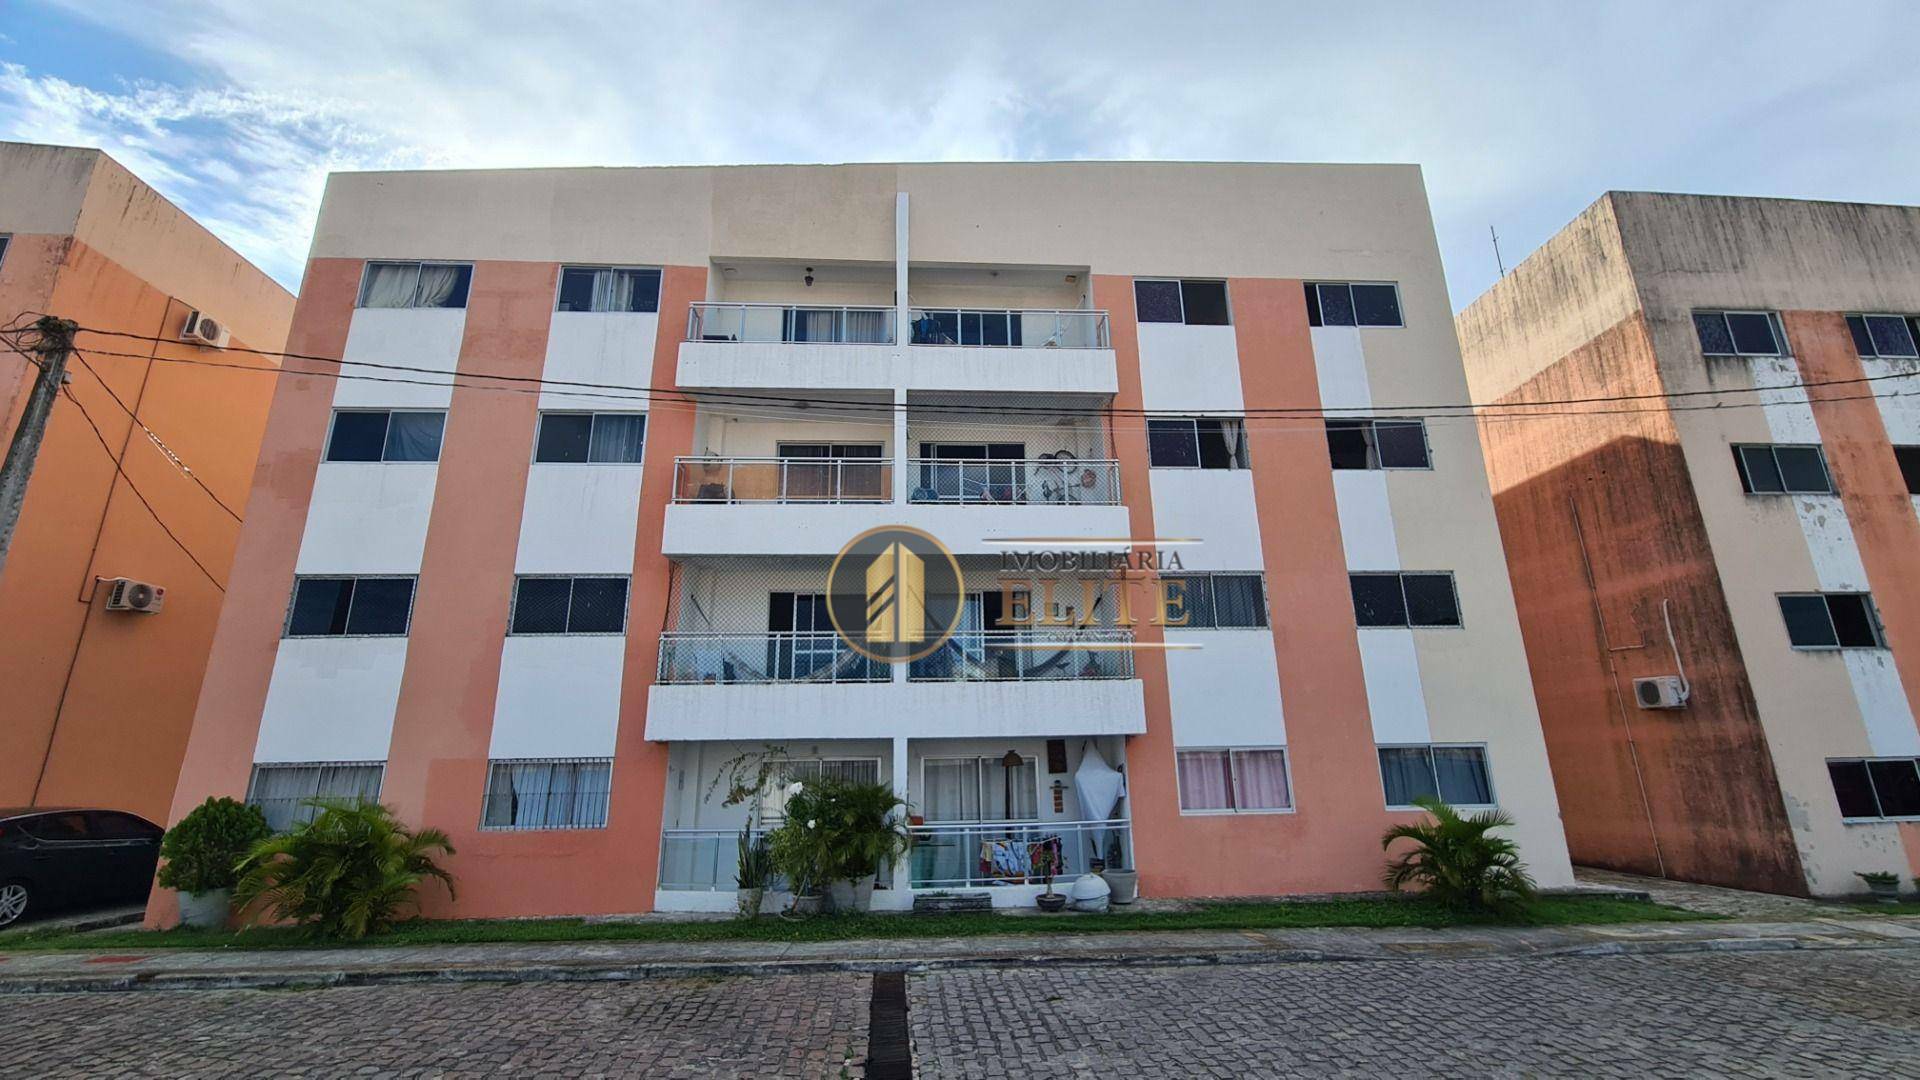 Apartamento de 2 quartos sendo 1 suíte para venda em condomínio fechado - Condomínio Jardins Maria Lopes, Parnamirim/RN